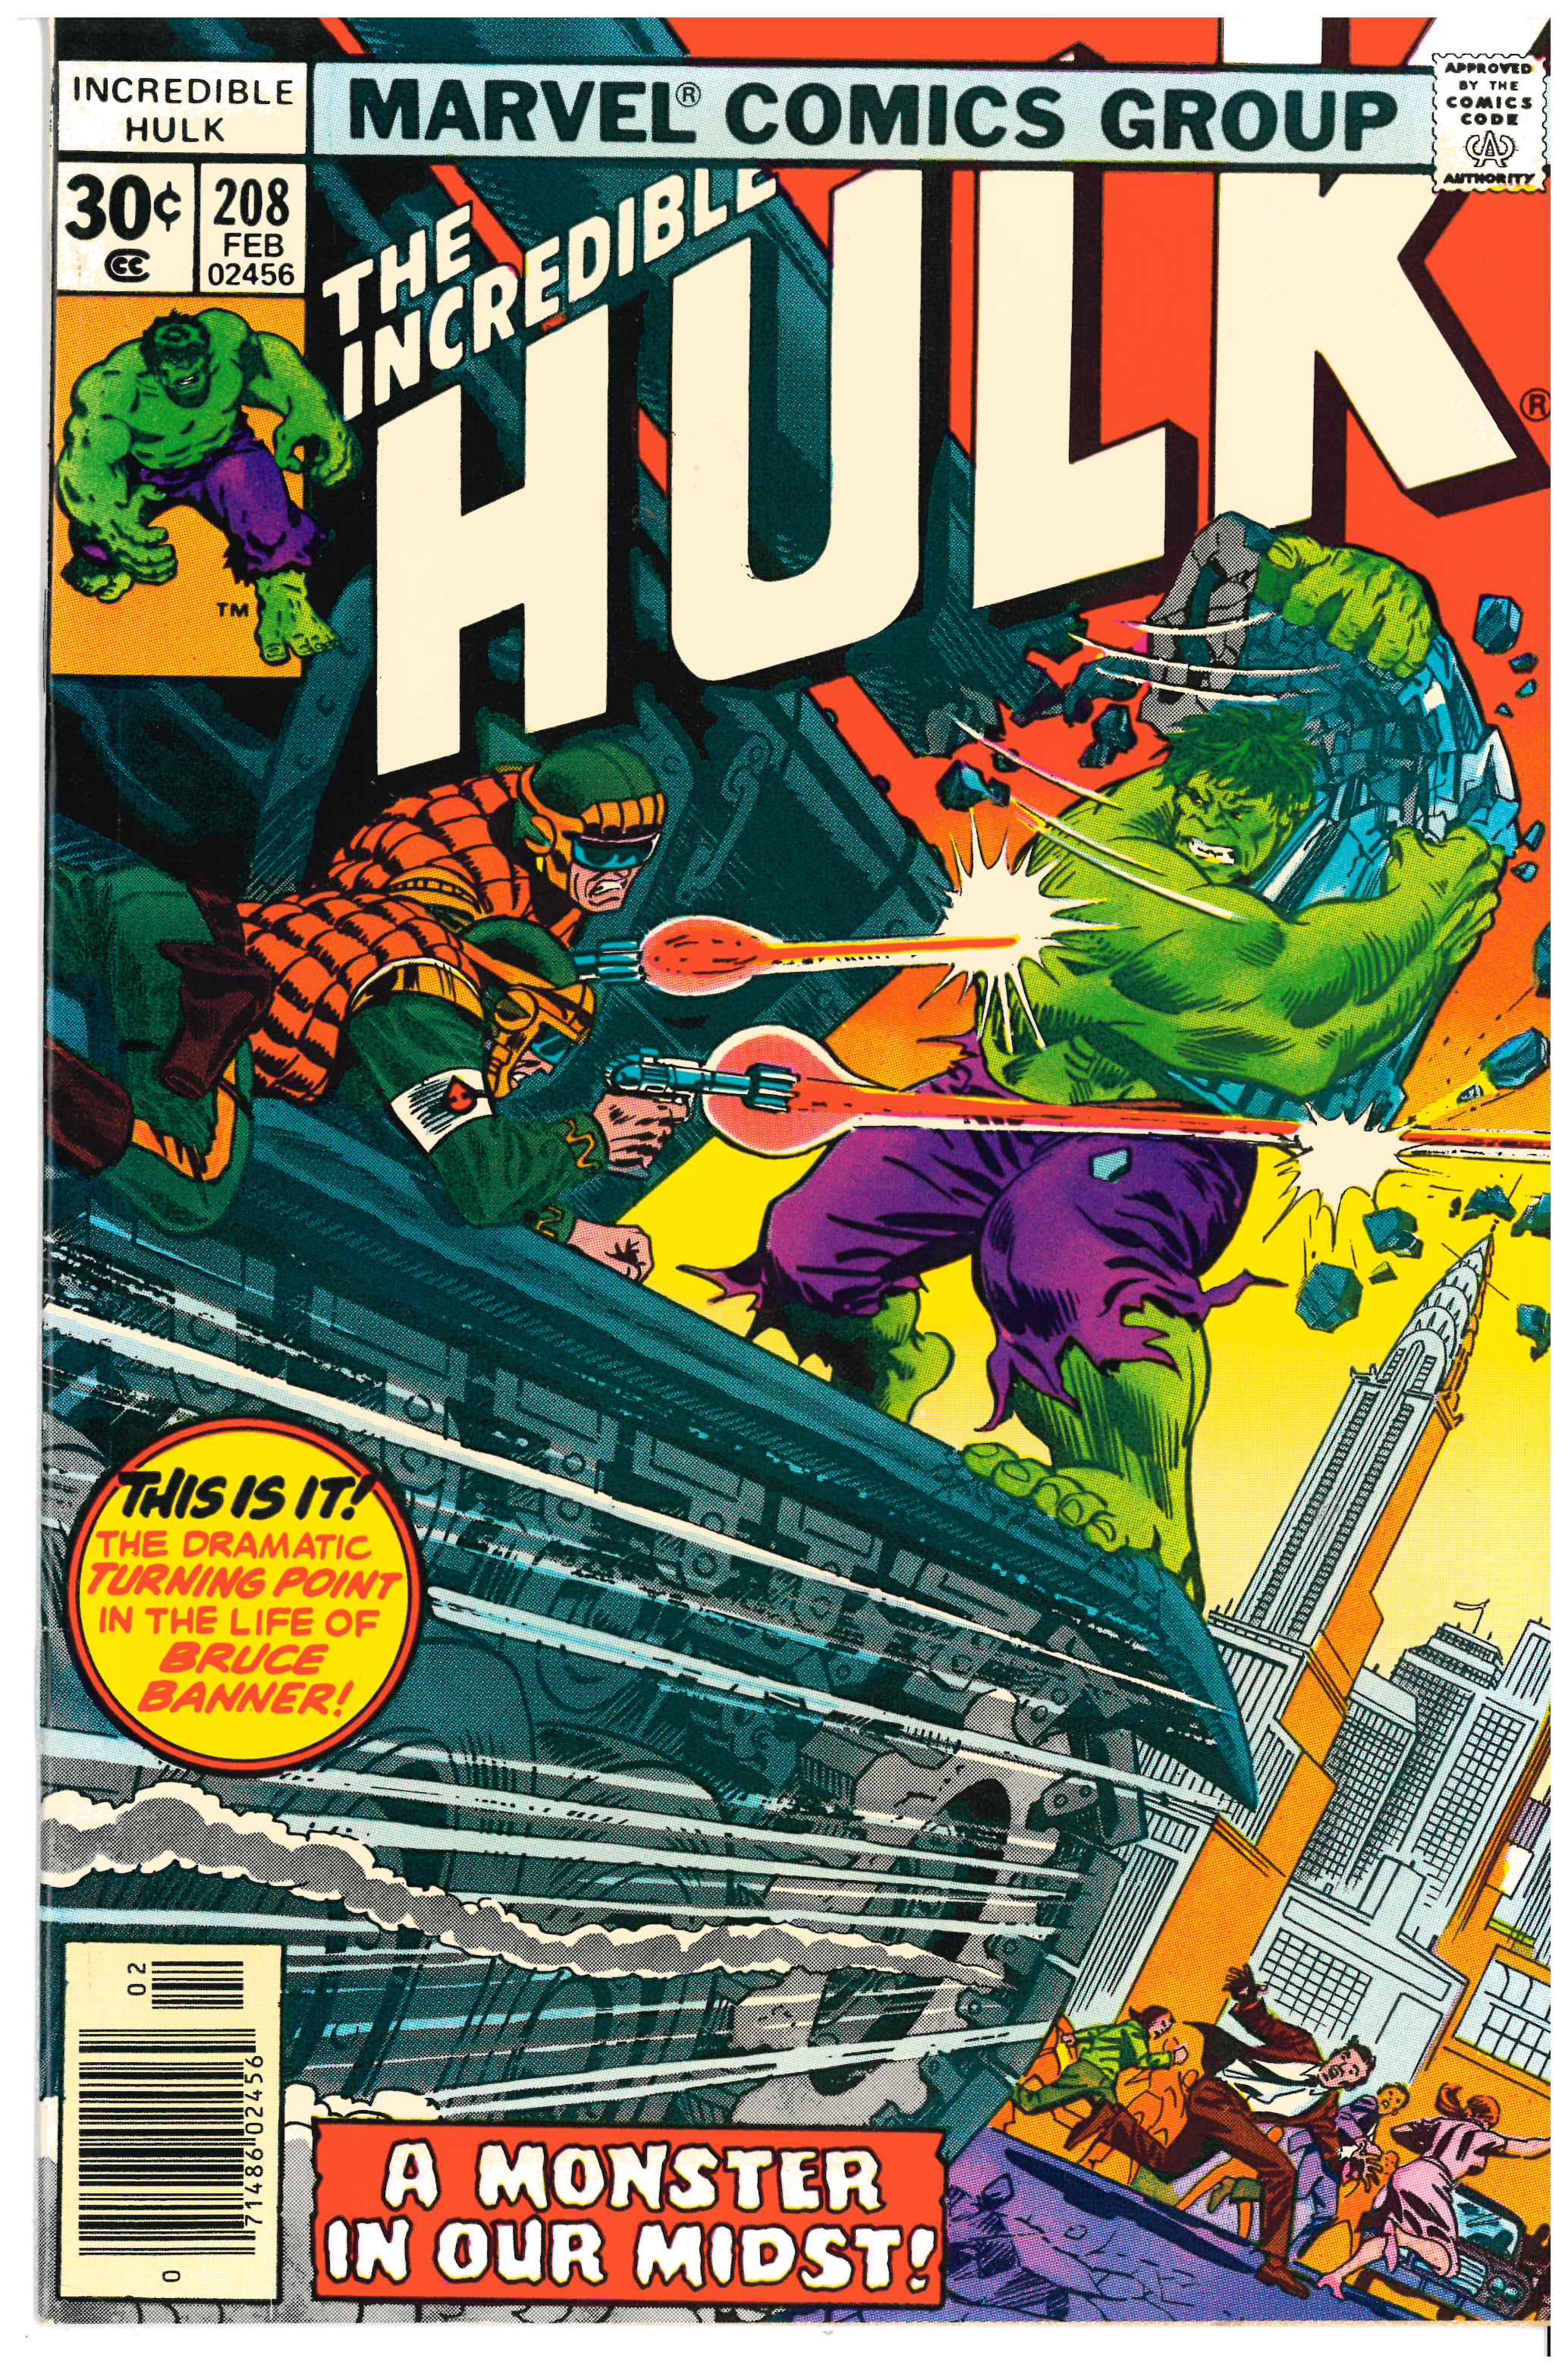 Incredible Hulk #208